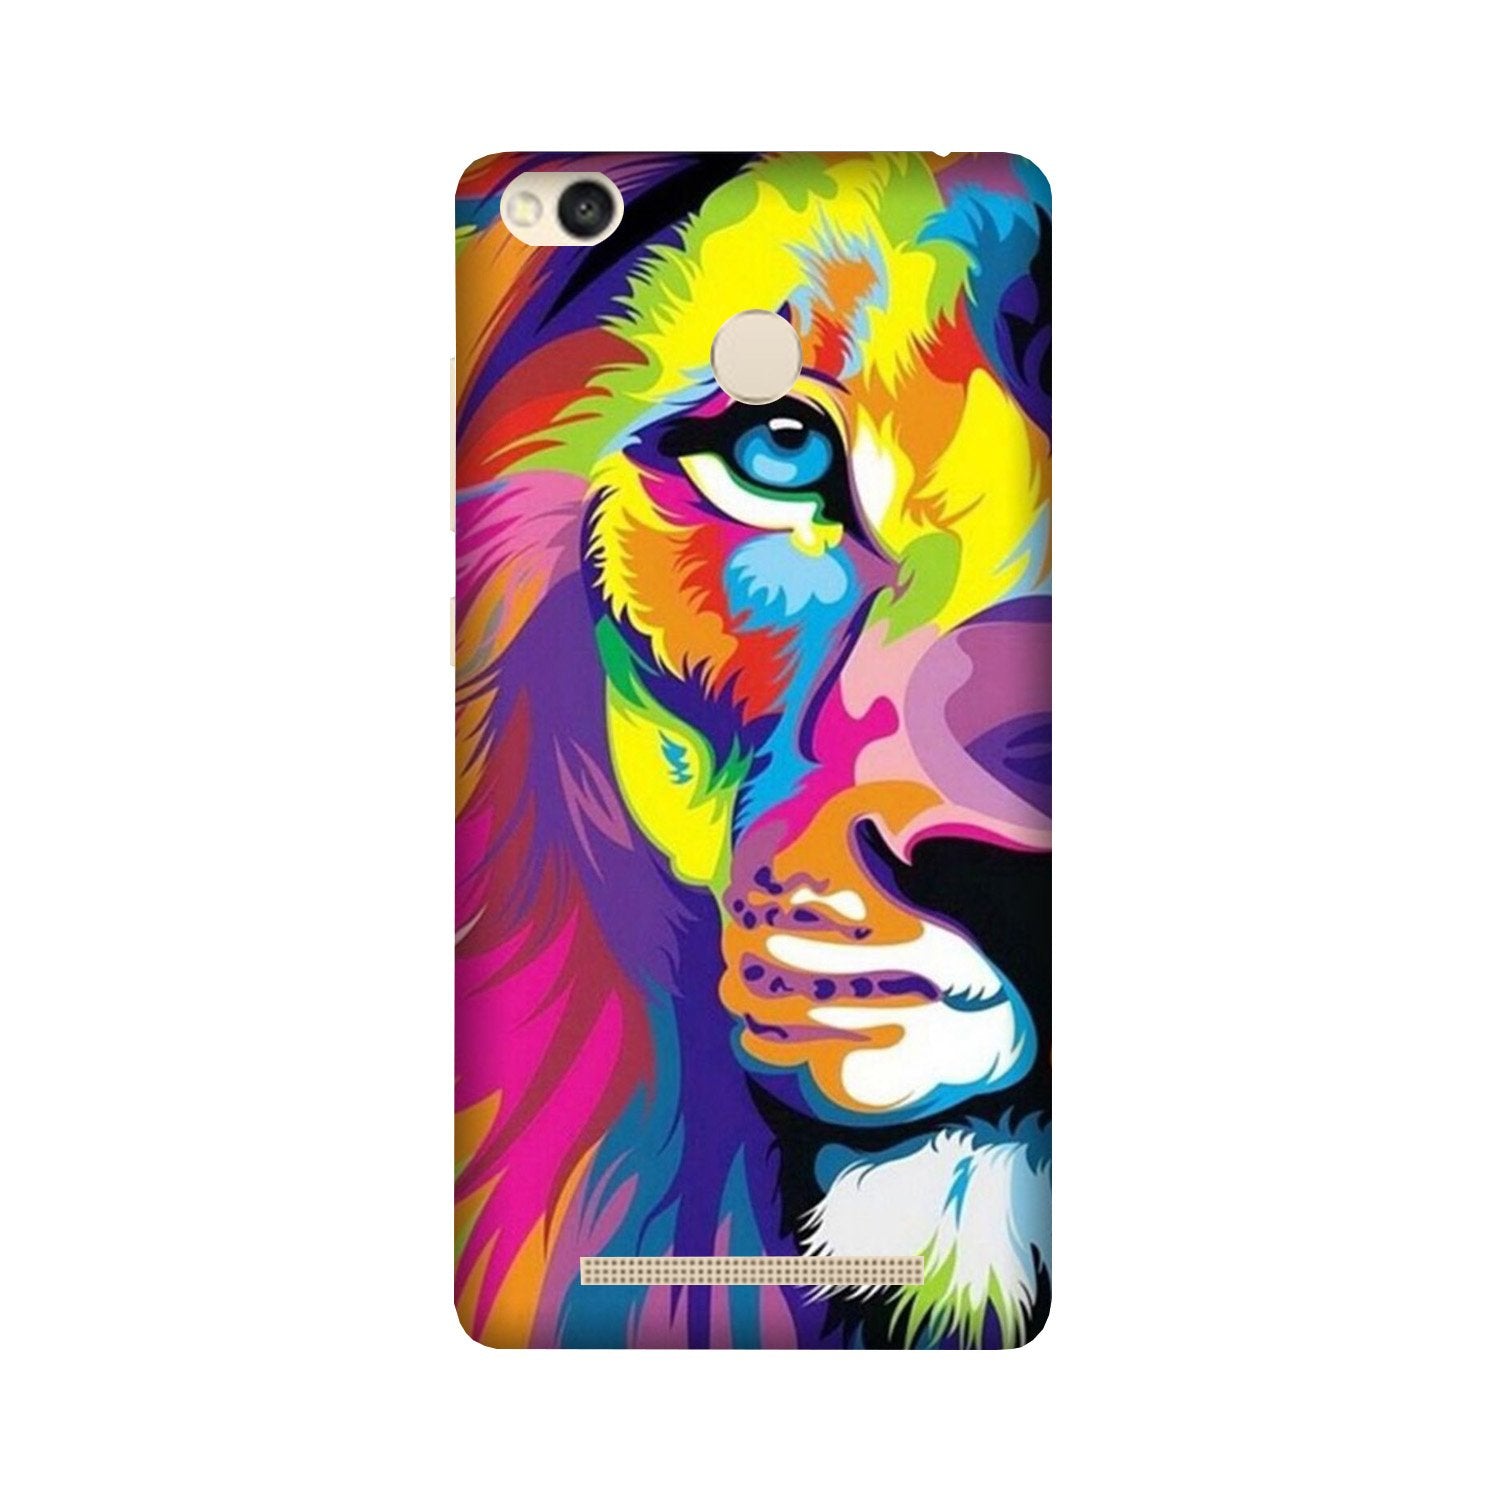 Colorful Lion Case for Redmi 3S Prime(Design - 110)